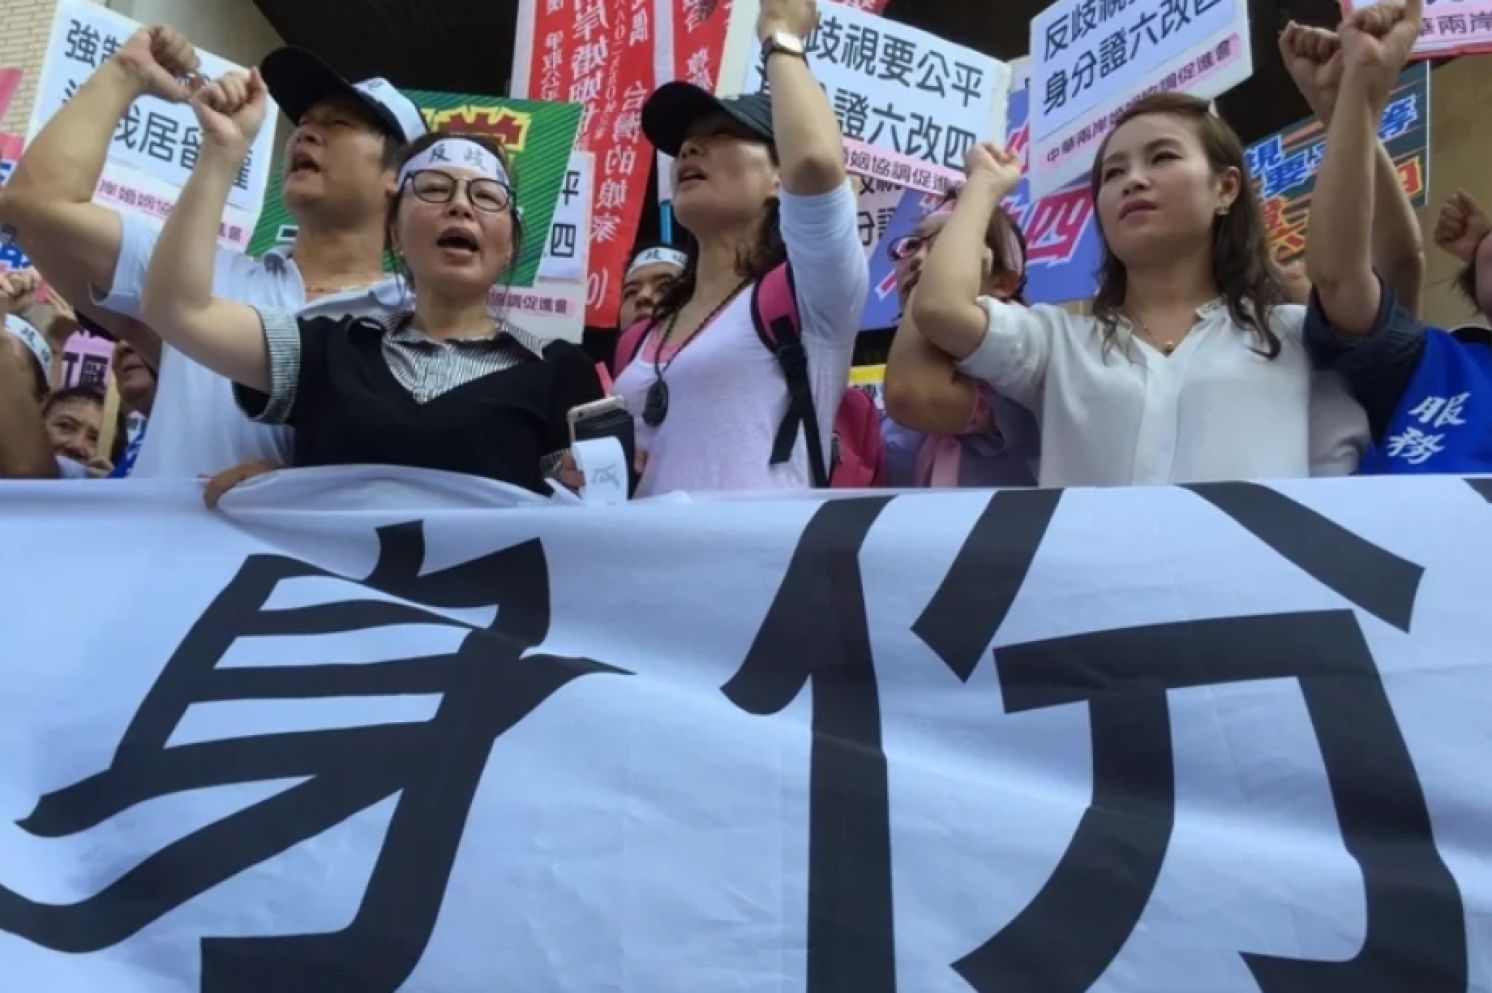 Beyond Blocking Mainland Chinese Spouses：DPP Seeks Enemies Within Taiwan